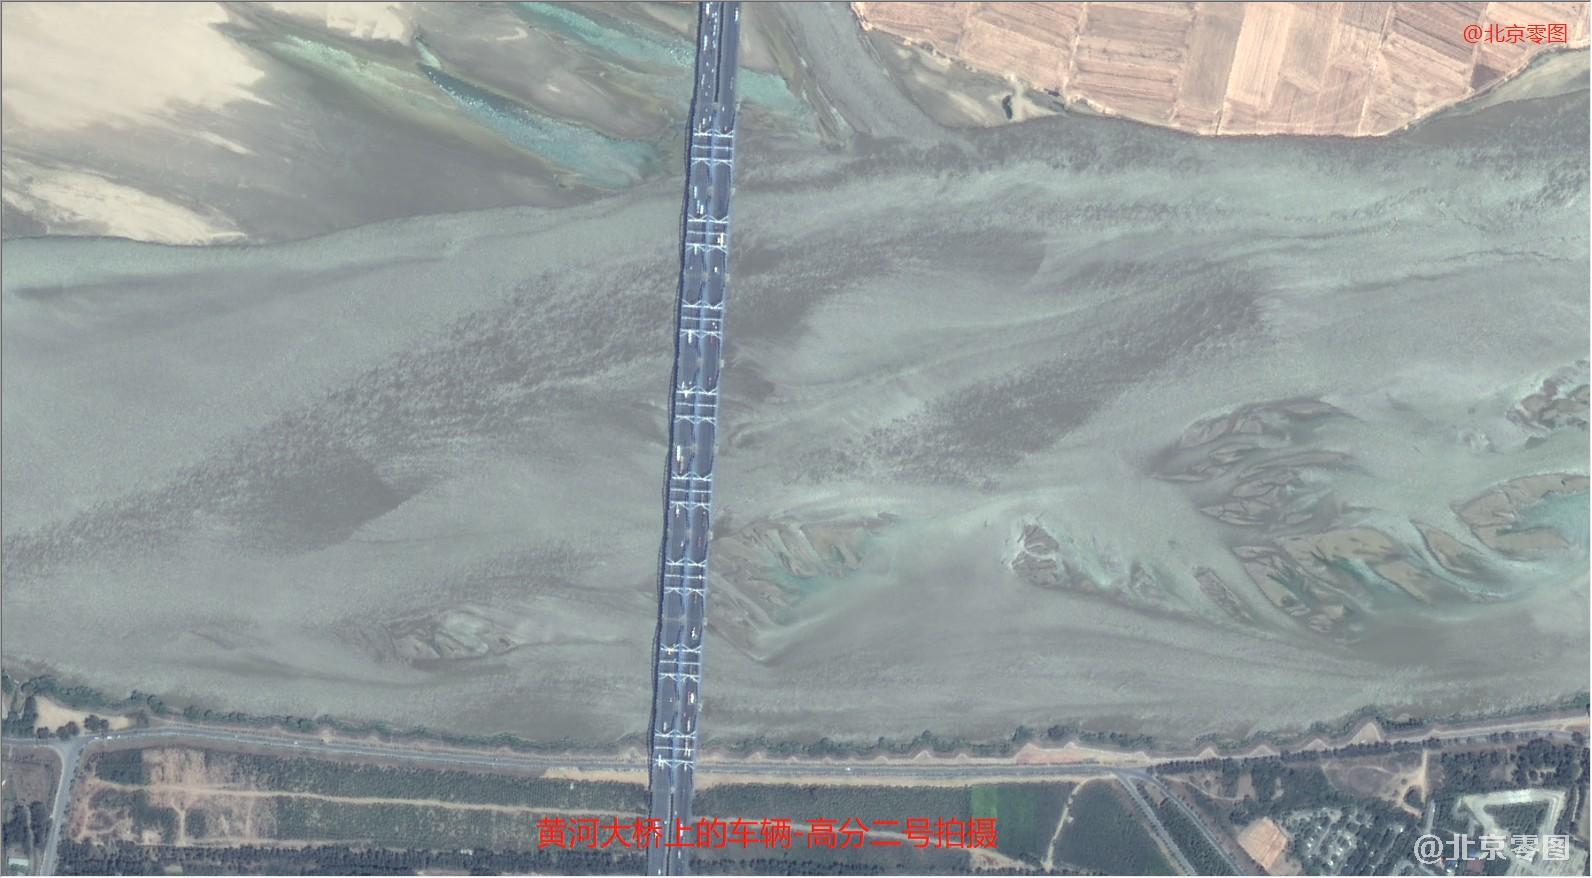 黄河高速大桥上的车辆清晰可见 - 高分二号卫星拍摄